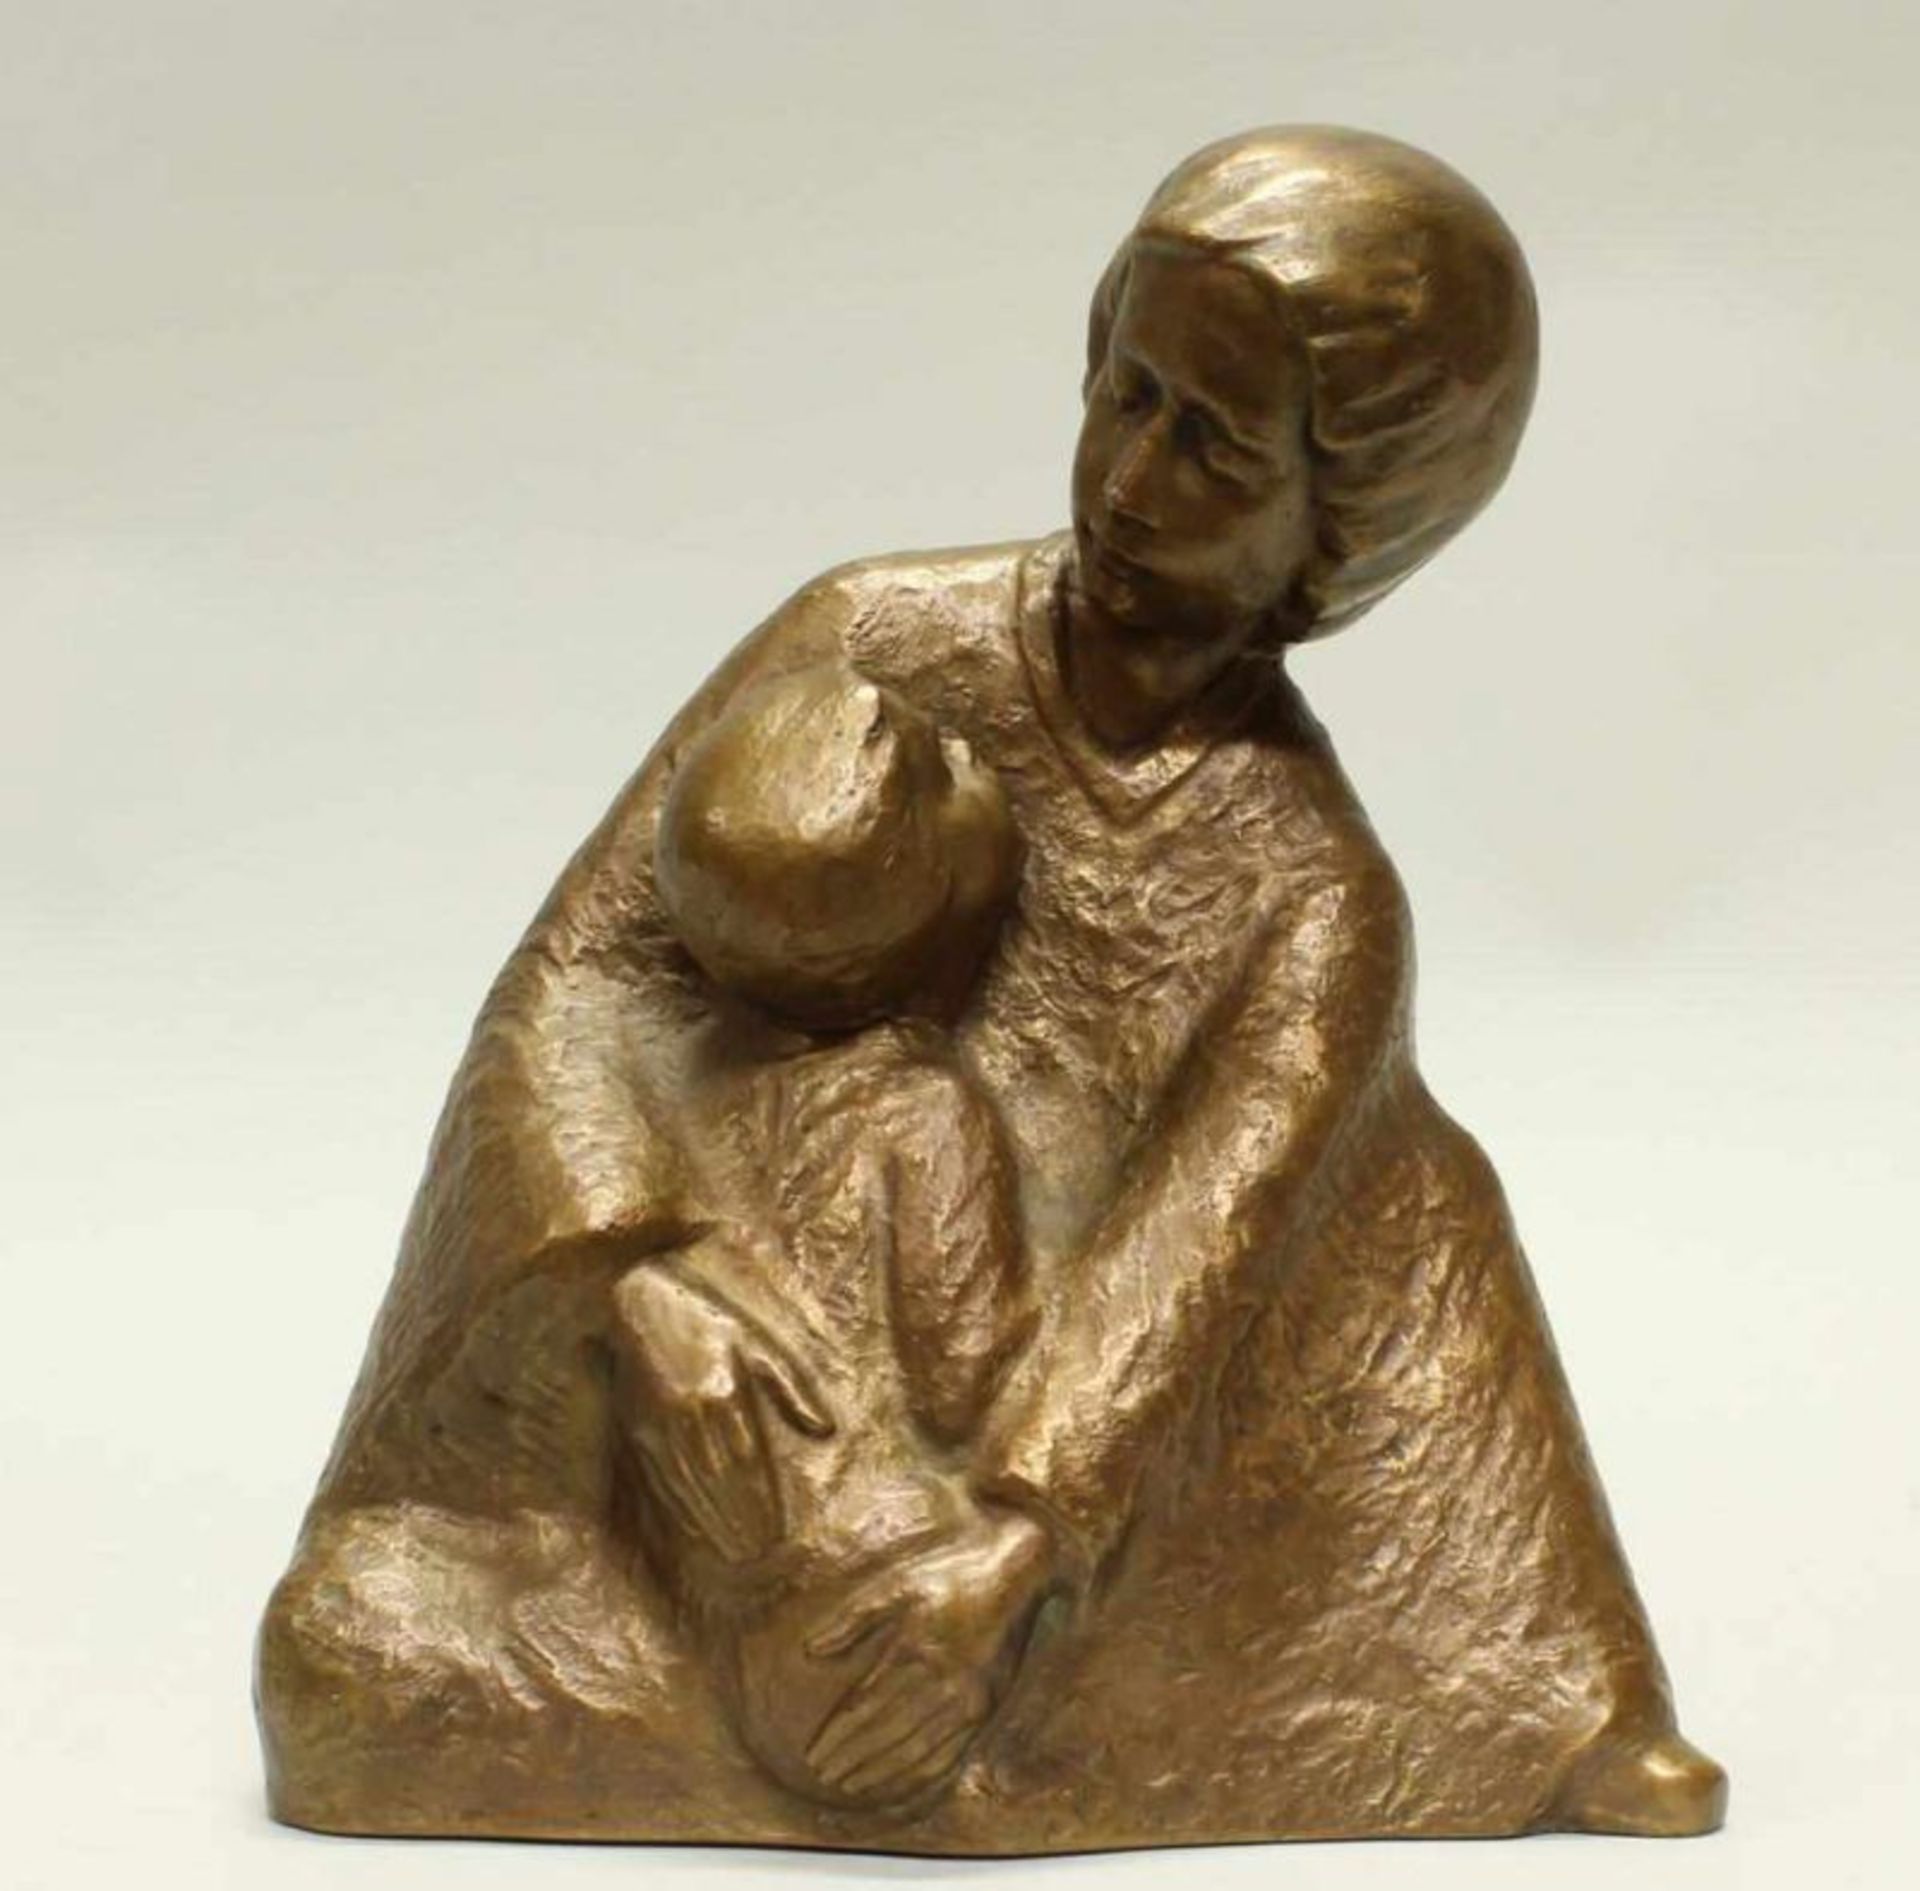 Bronze, gold patiniert, "Geborgenheit", Mutter mit Kind, bezeichnet F. Gerz 2000, nummeriert 015,